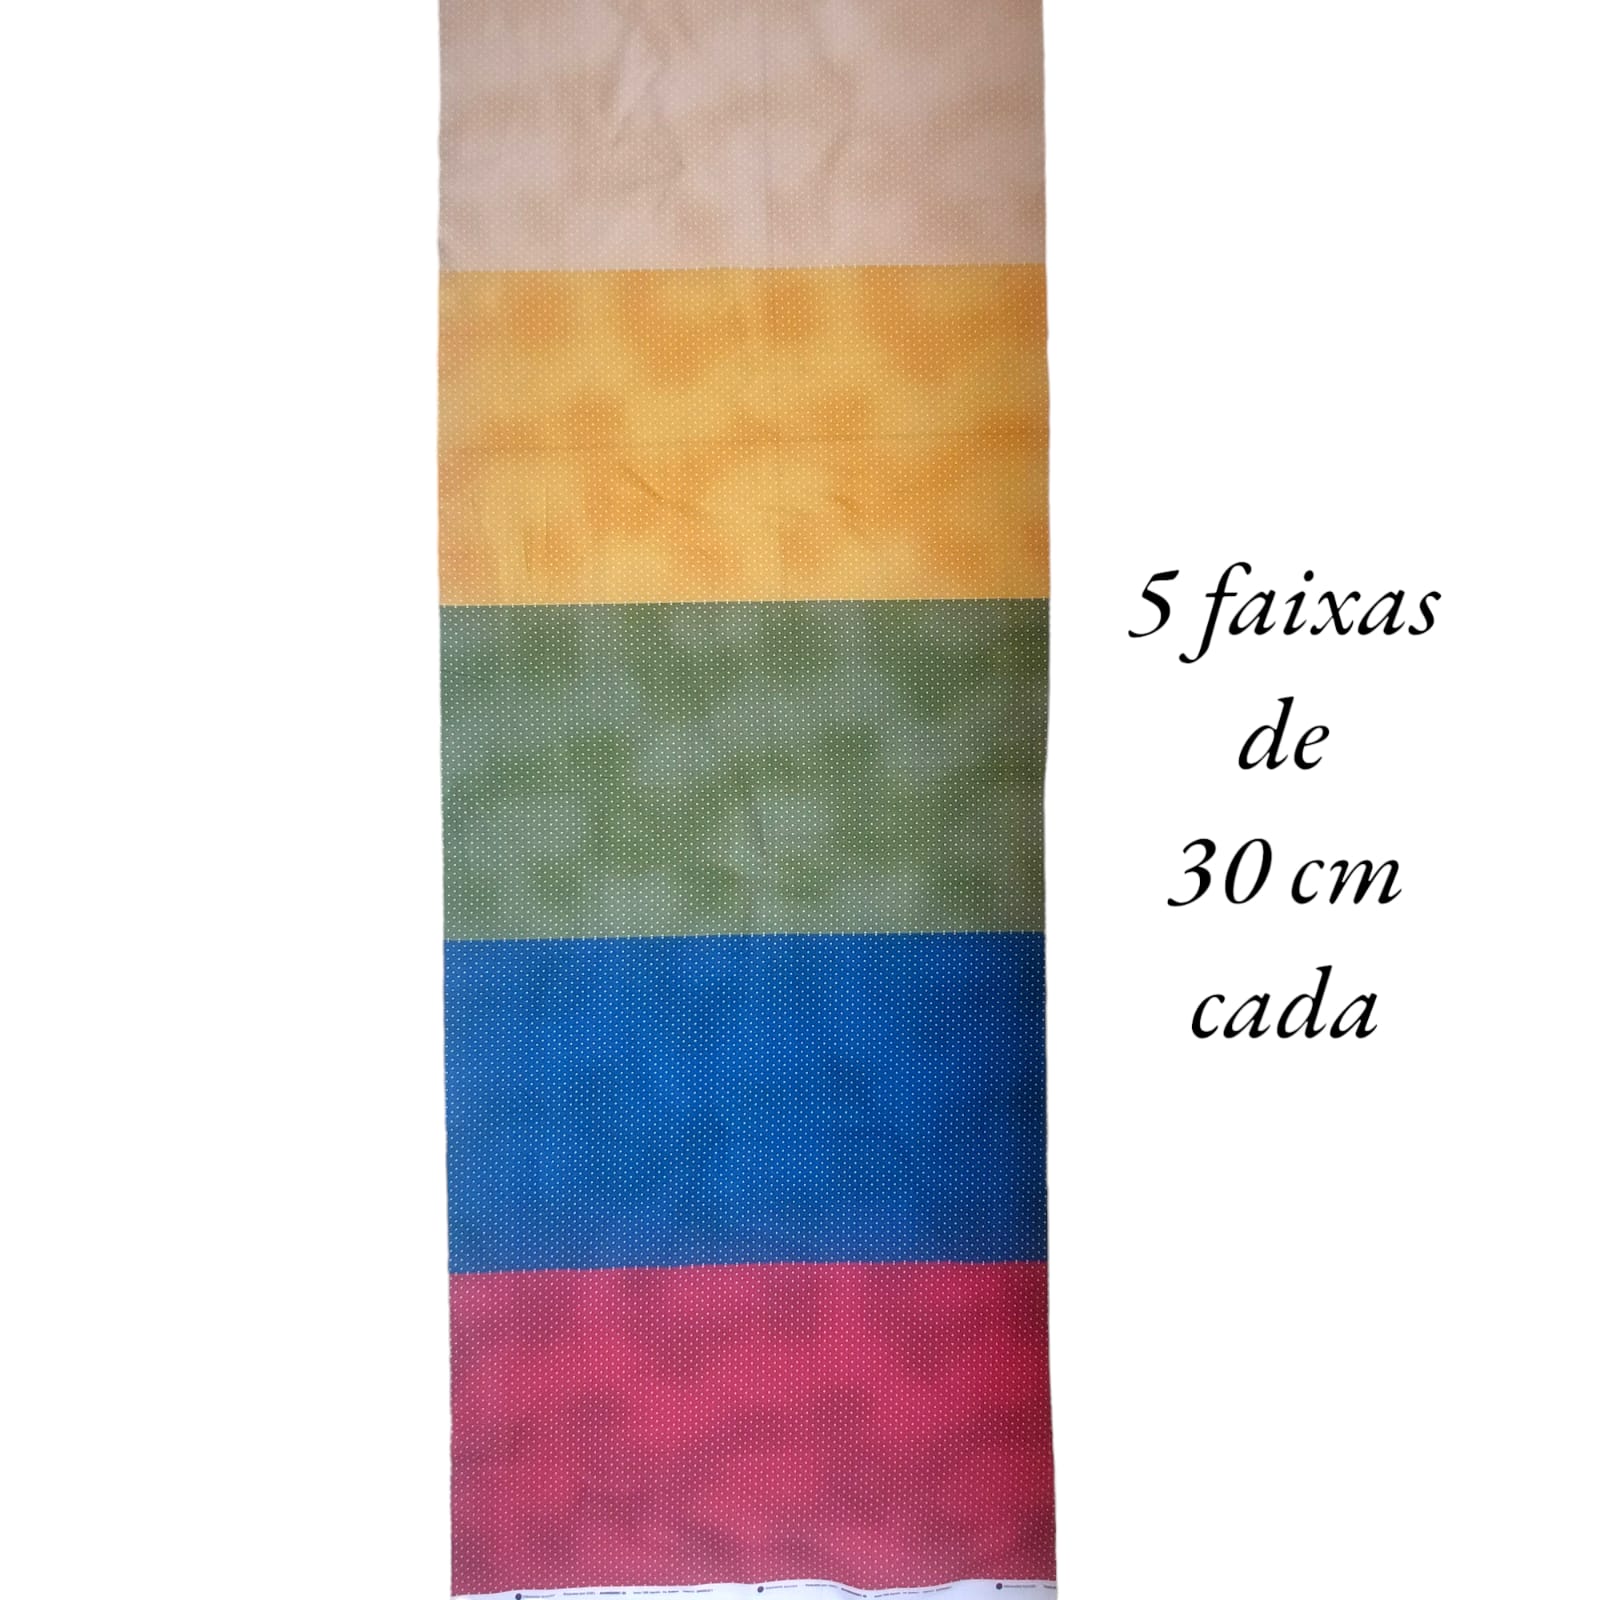 Tecido Tricoline digital - faixas de poa branco fd. cores sortidas - Col. Basics for All - Fernando Maluhy  (50x1,50 cm)                           